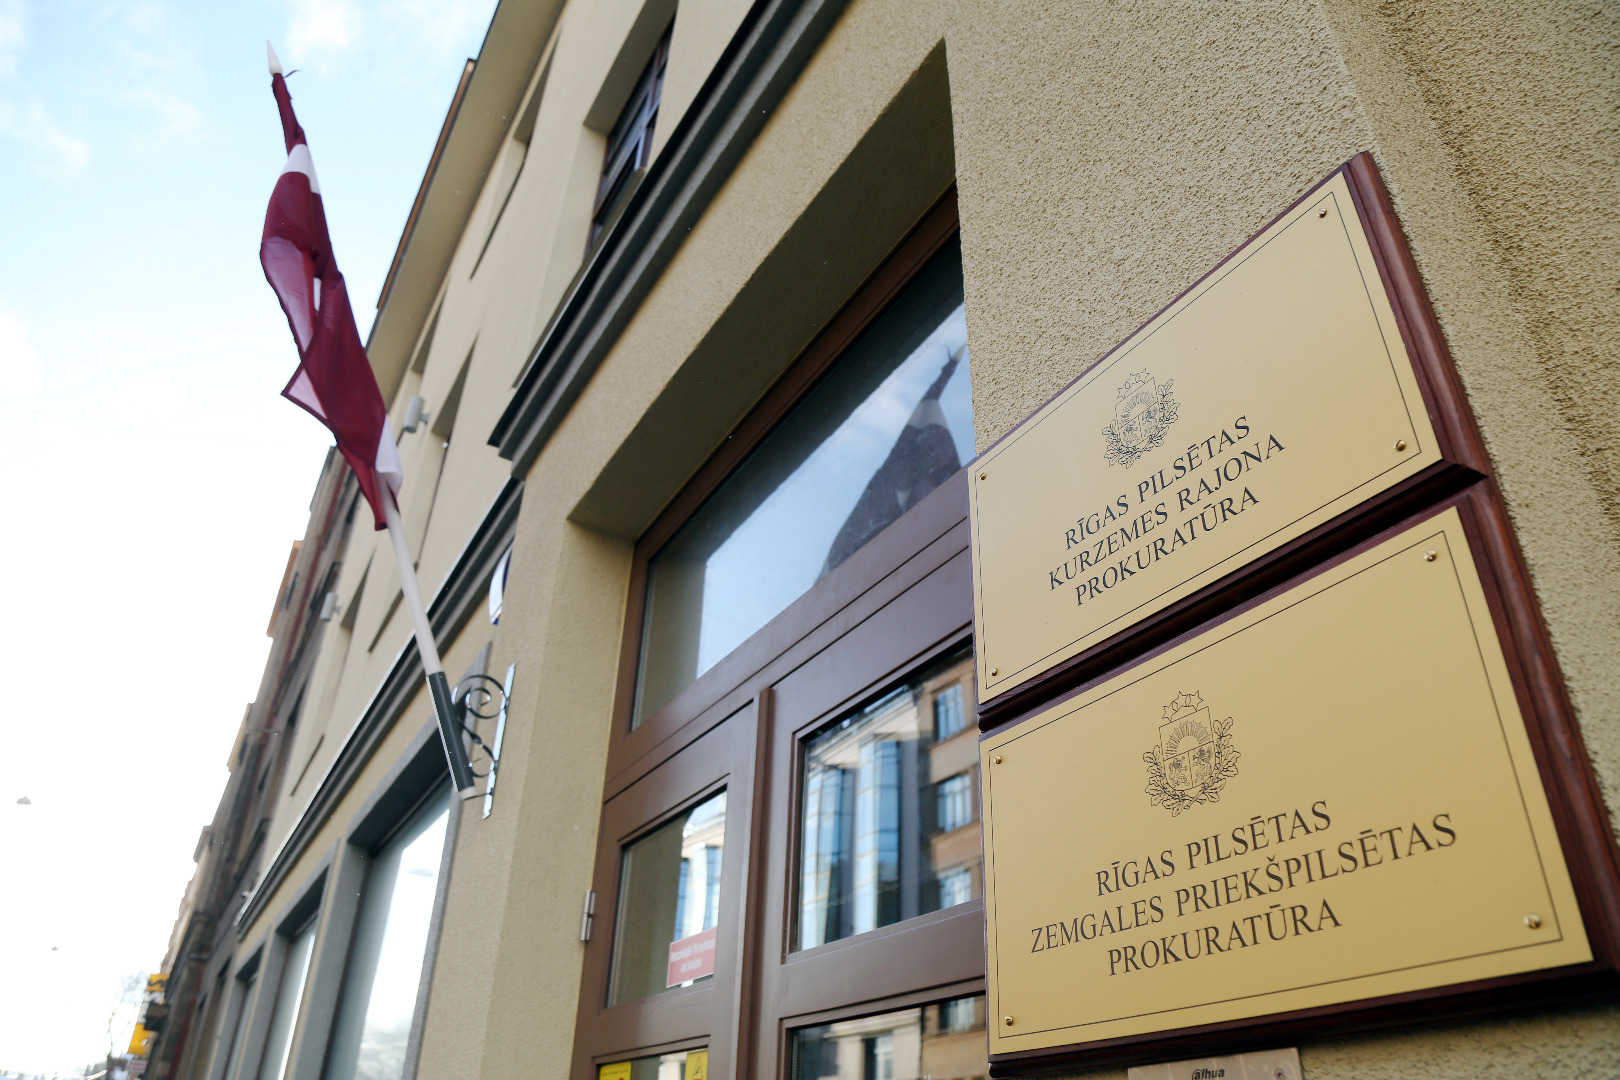 Prokuratūras jauno telpu Rīgā, Kalnciema ielā 14 atklāšanas pasākums 2019.gada 21.janvārī (foto - LETA) - 